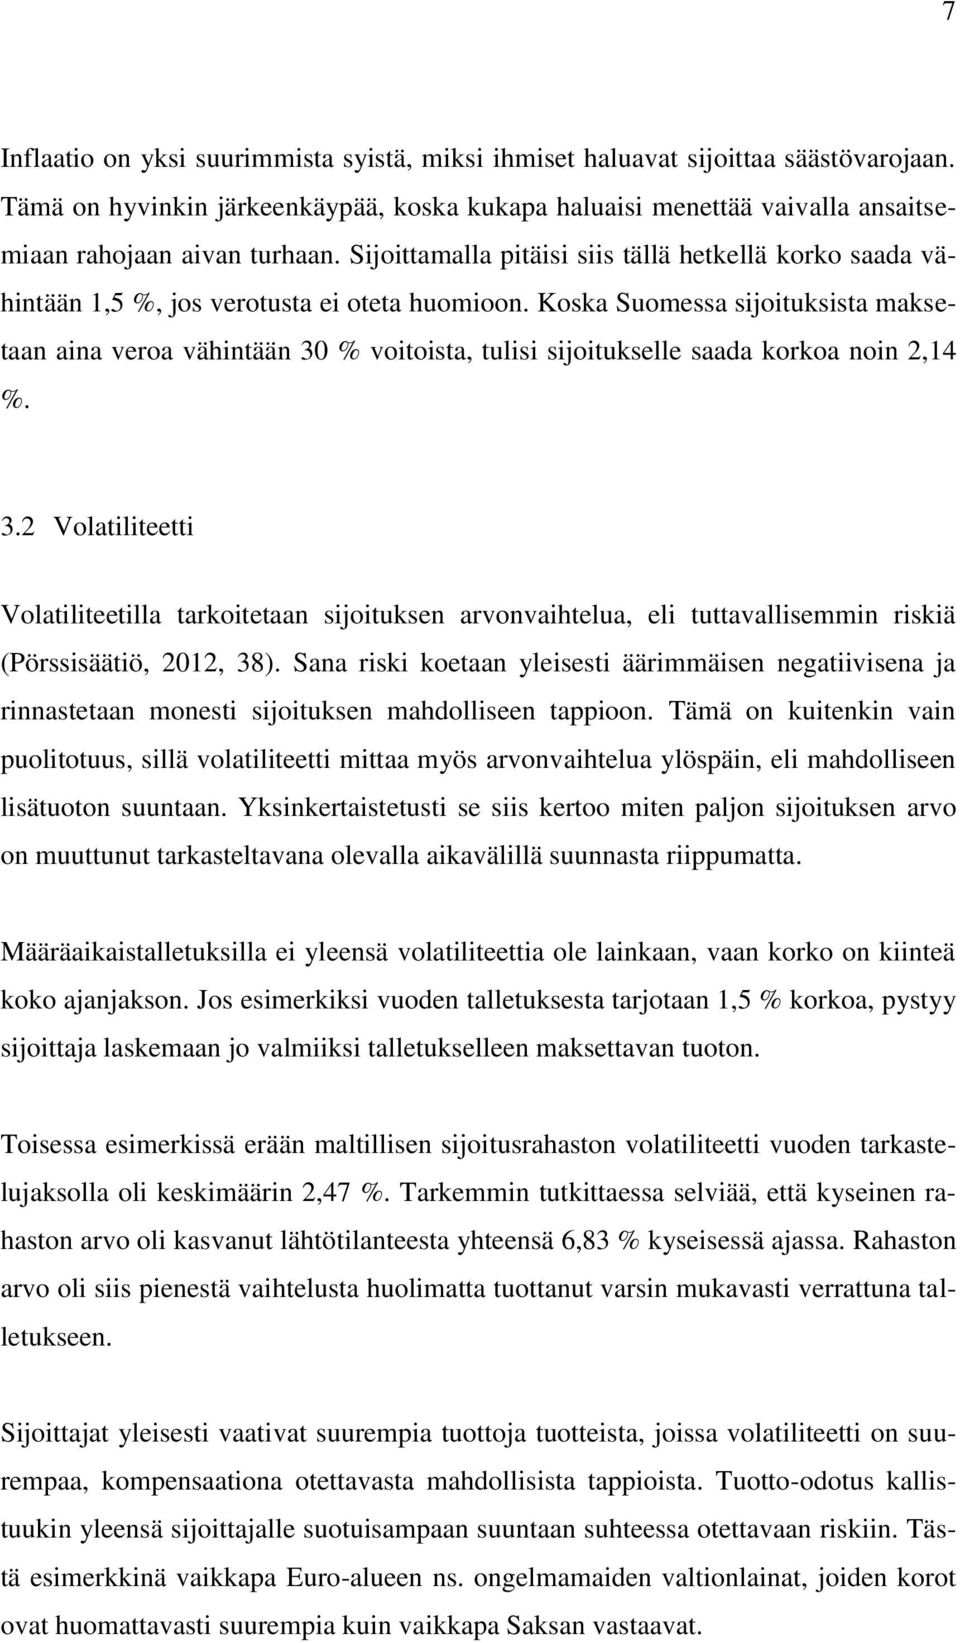 Koska Suomessa sijoituksista maksetaan aina veroa vähintään 30 % voitoista, tulisi sijoitukselle saada korkoa noin 2,14 %. 3.2 Volatiliteetti Volatiliteetilla tarkoitetaan sijoituksen arvonvaihtelua, eli tuttavallisemmin riskiä (Pörssisäätiö, 2012, 38).